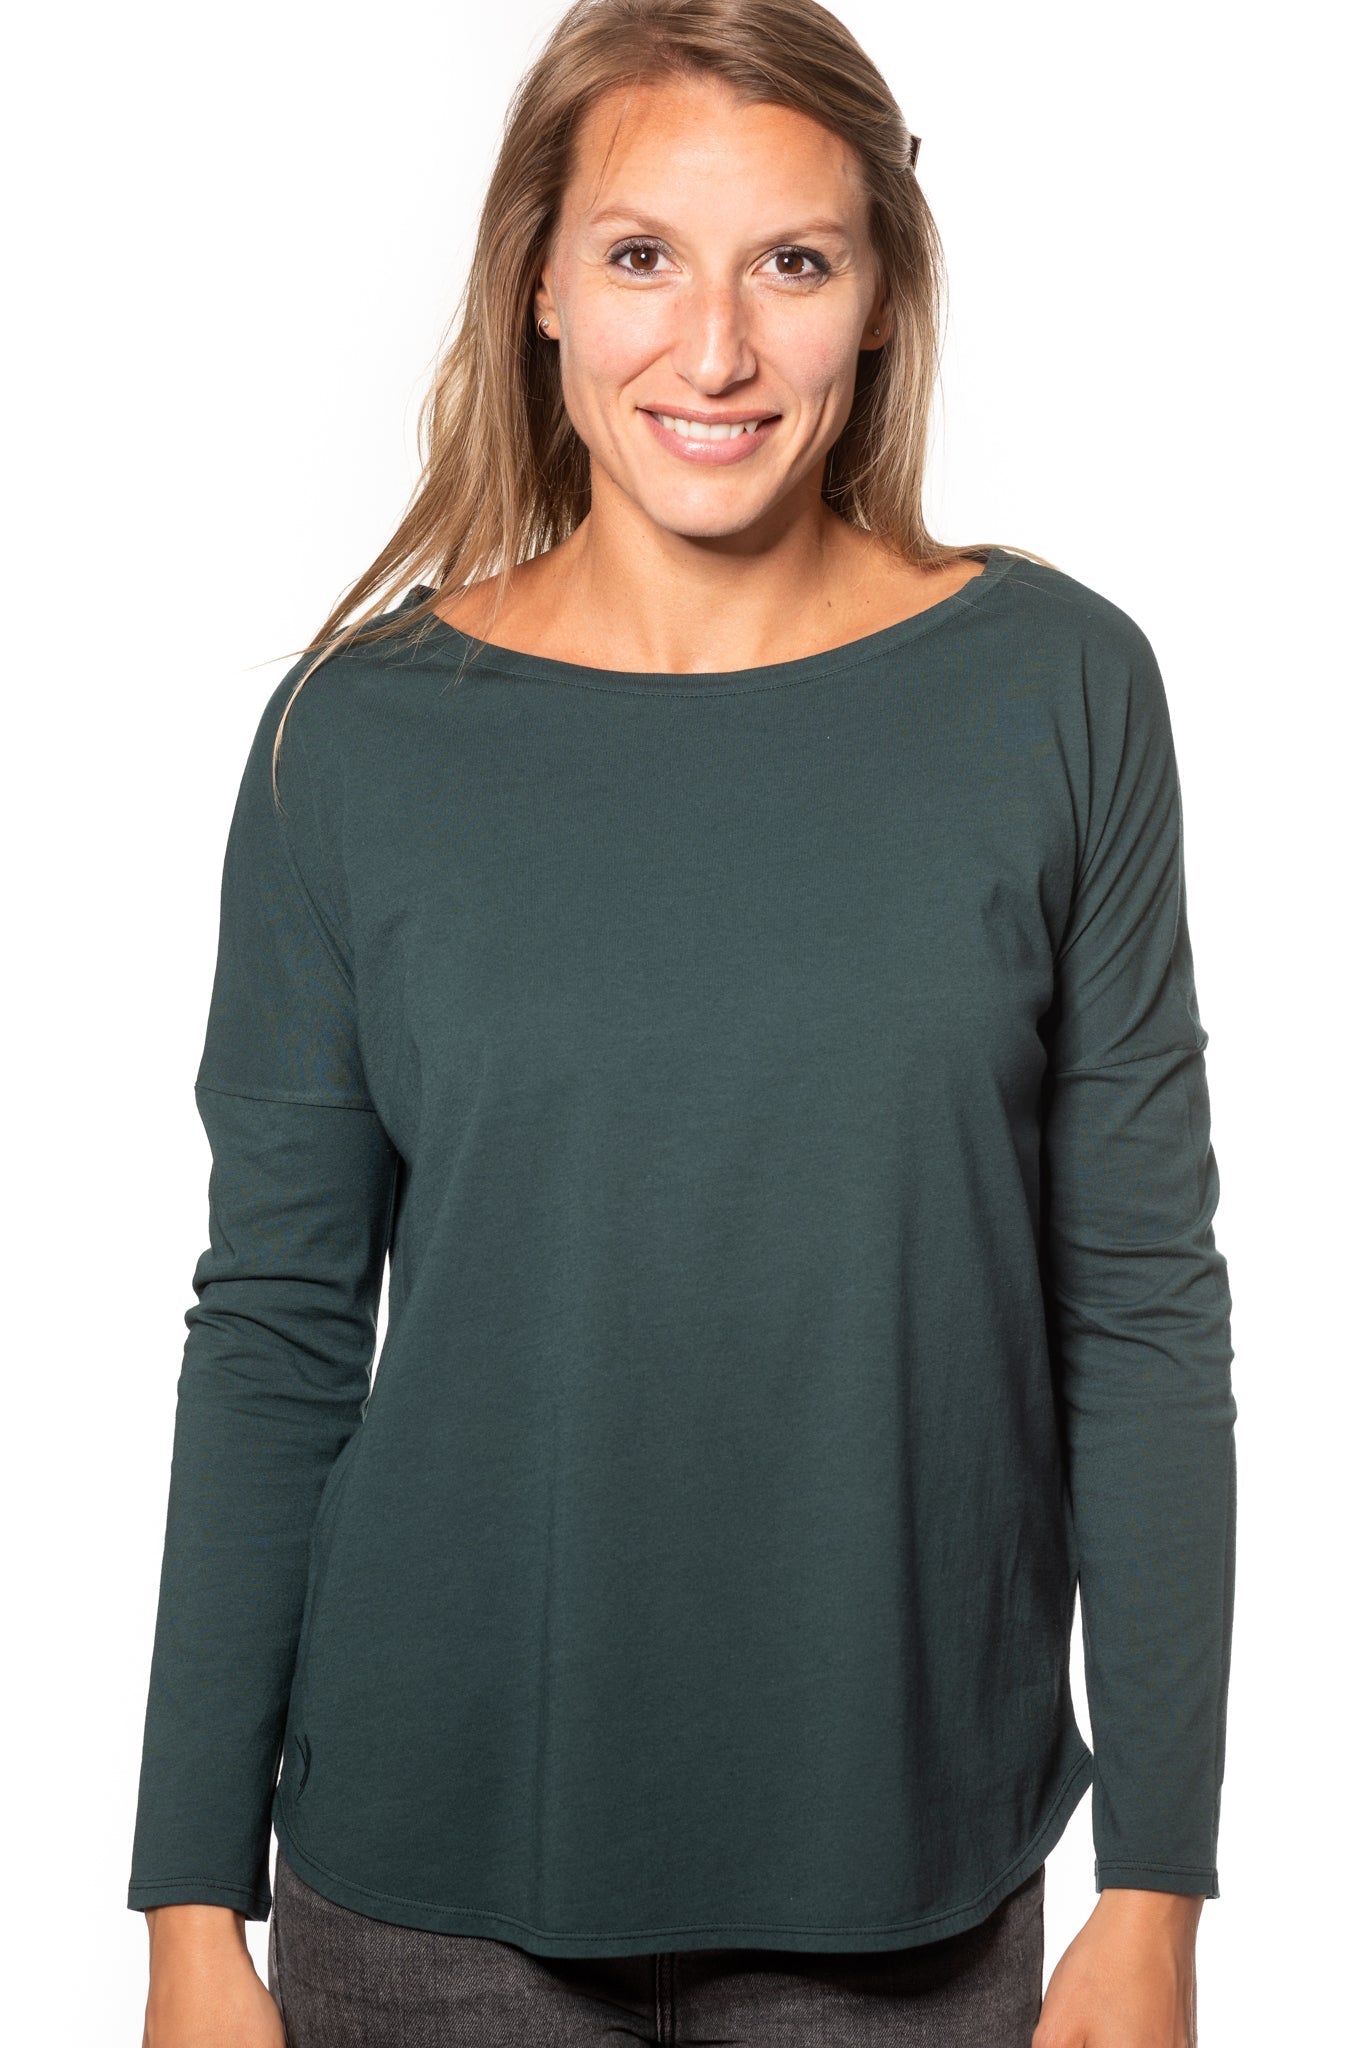 Tee shirt pour femme en coton bio GOTS eco responsable à manche longue, oversize, col rond évasé Extra suny vert foncé